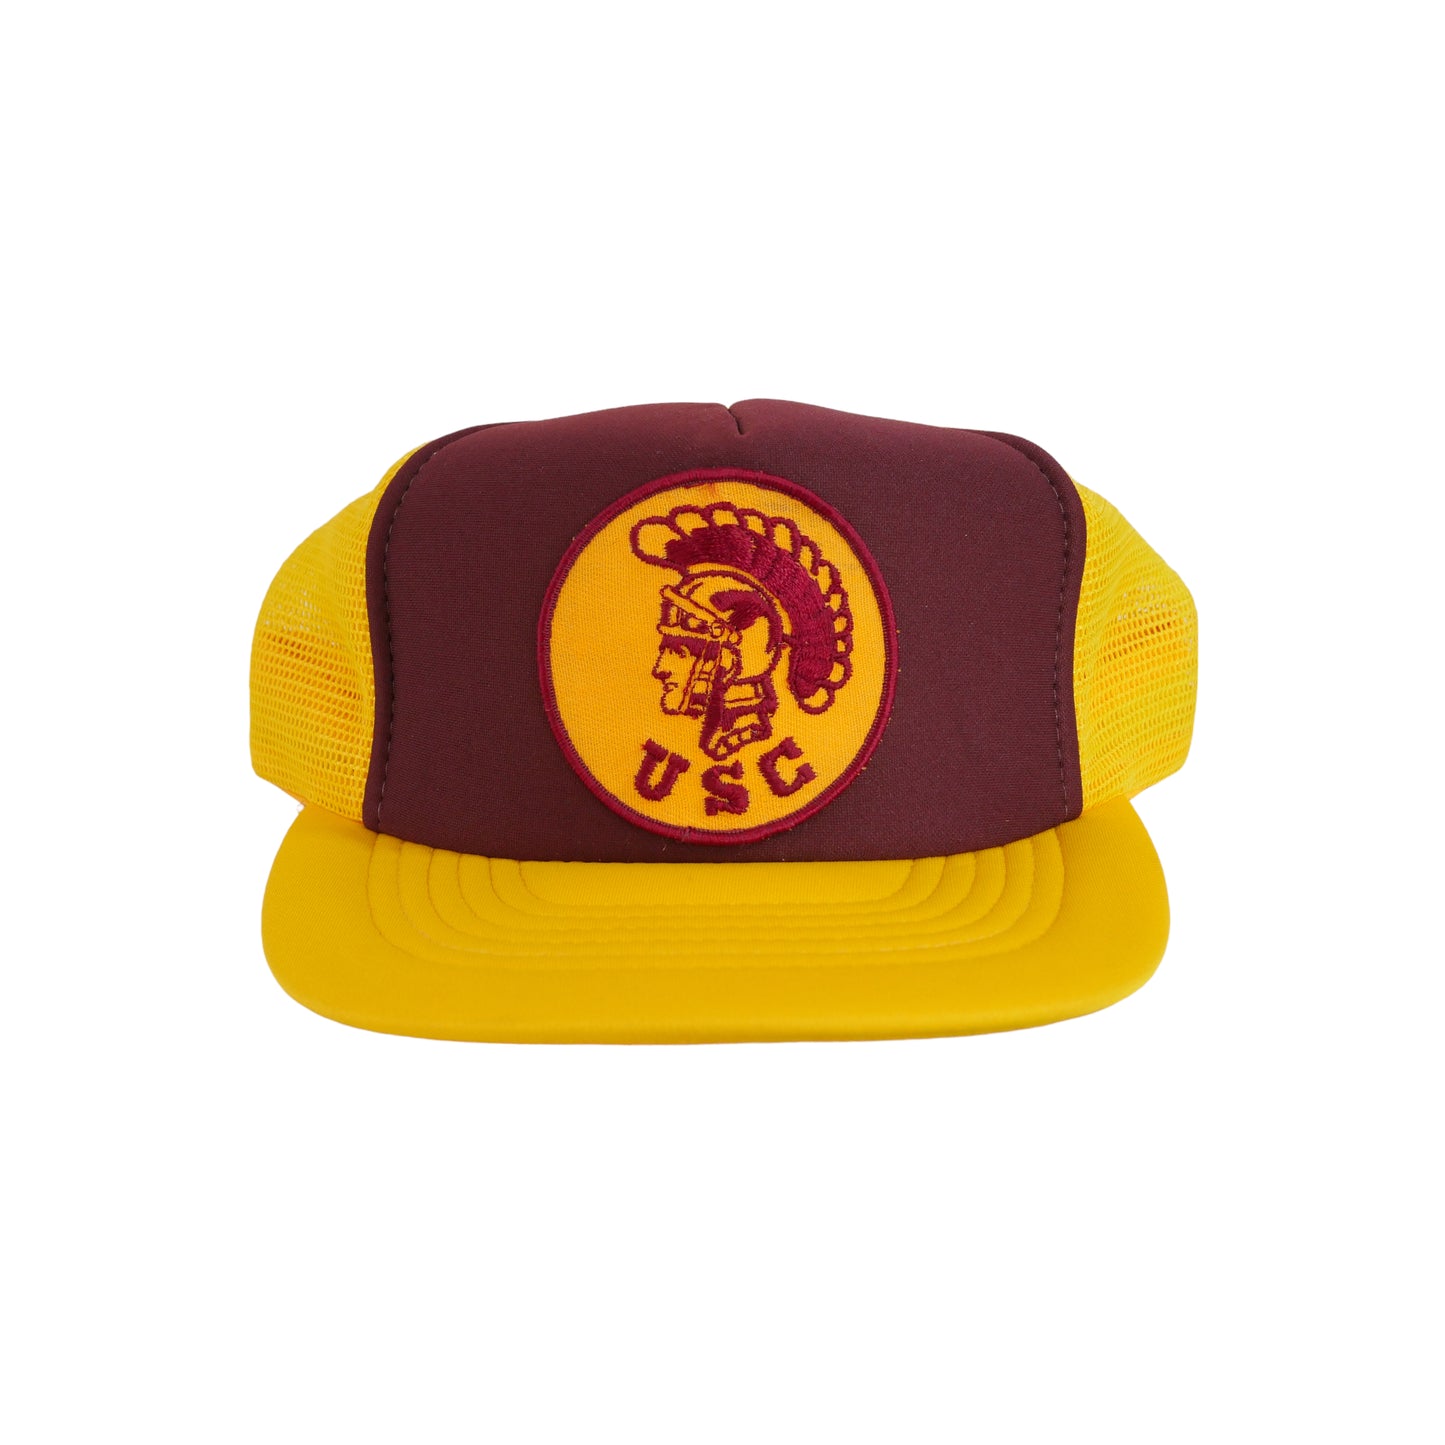 USC Trojans Trucker Hat